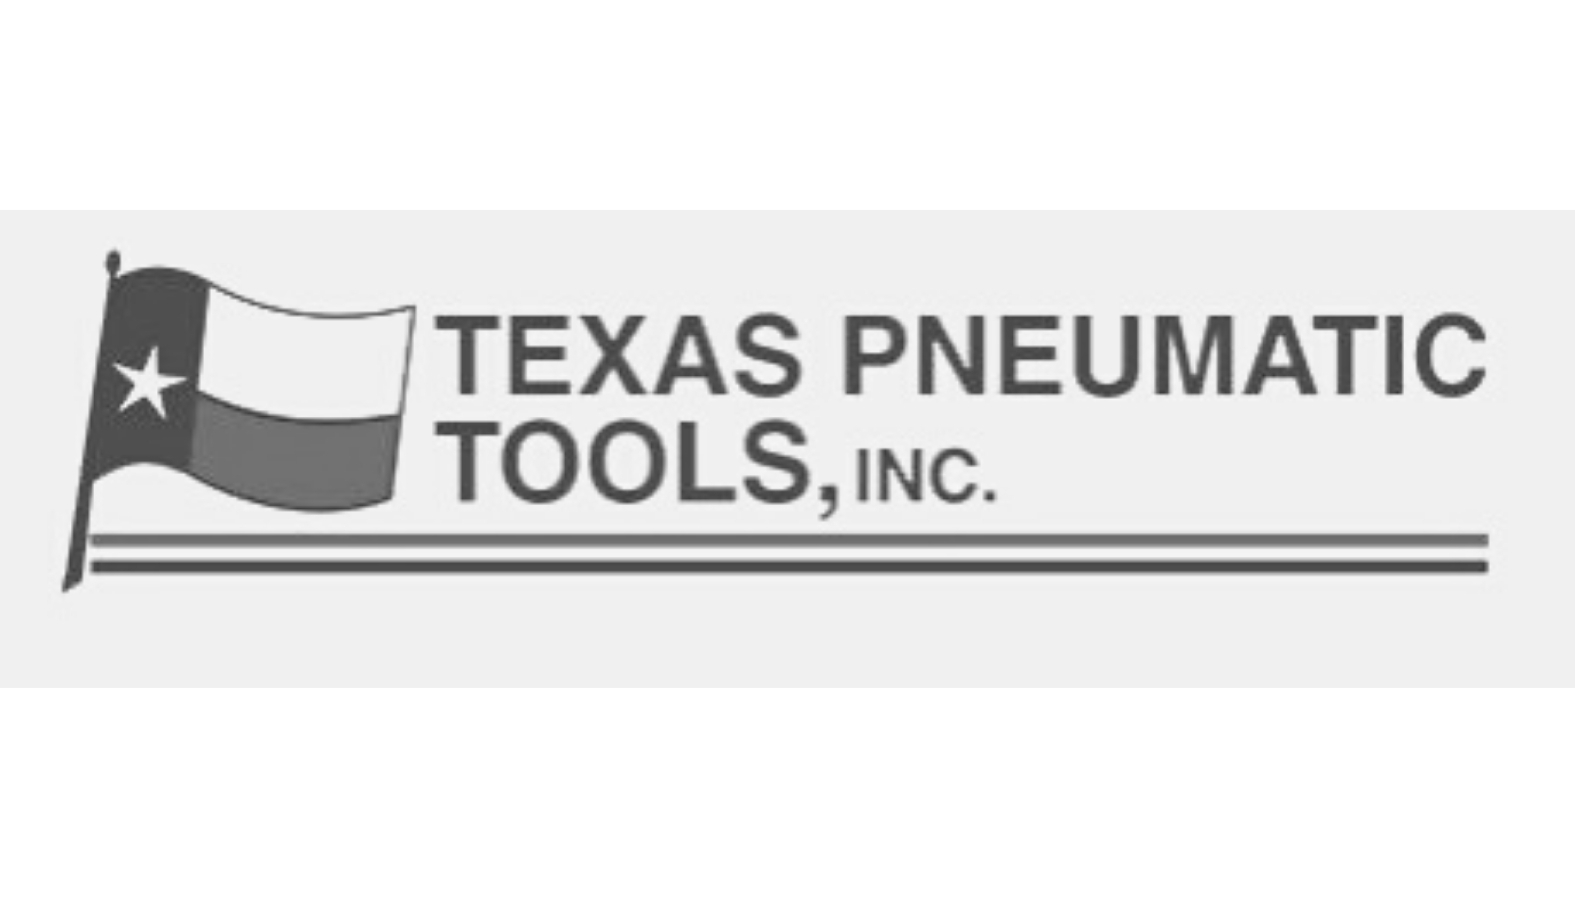 Texas Pneumatic Tools